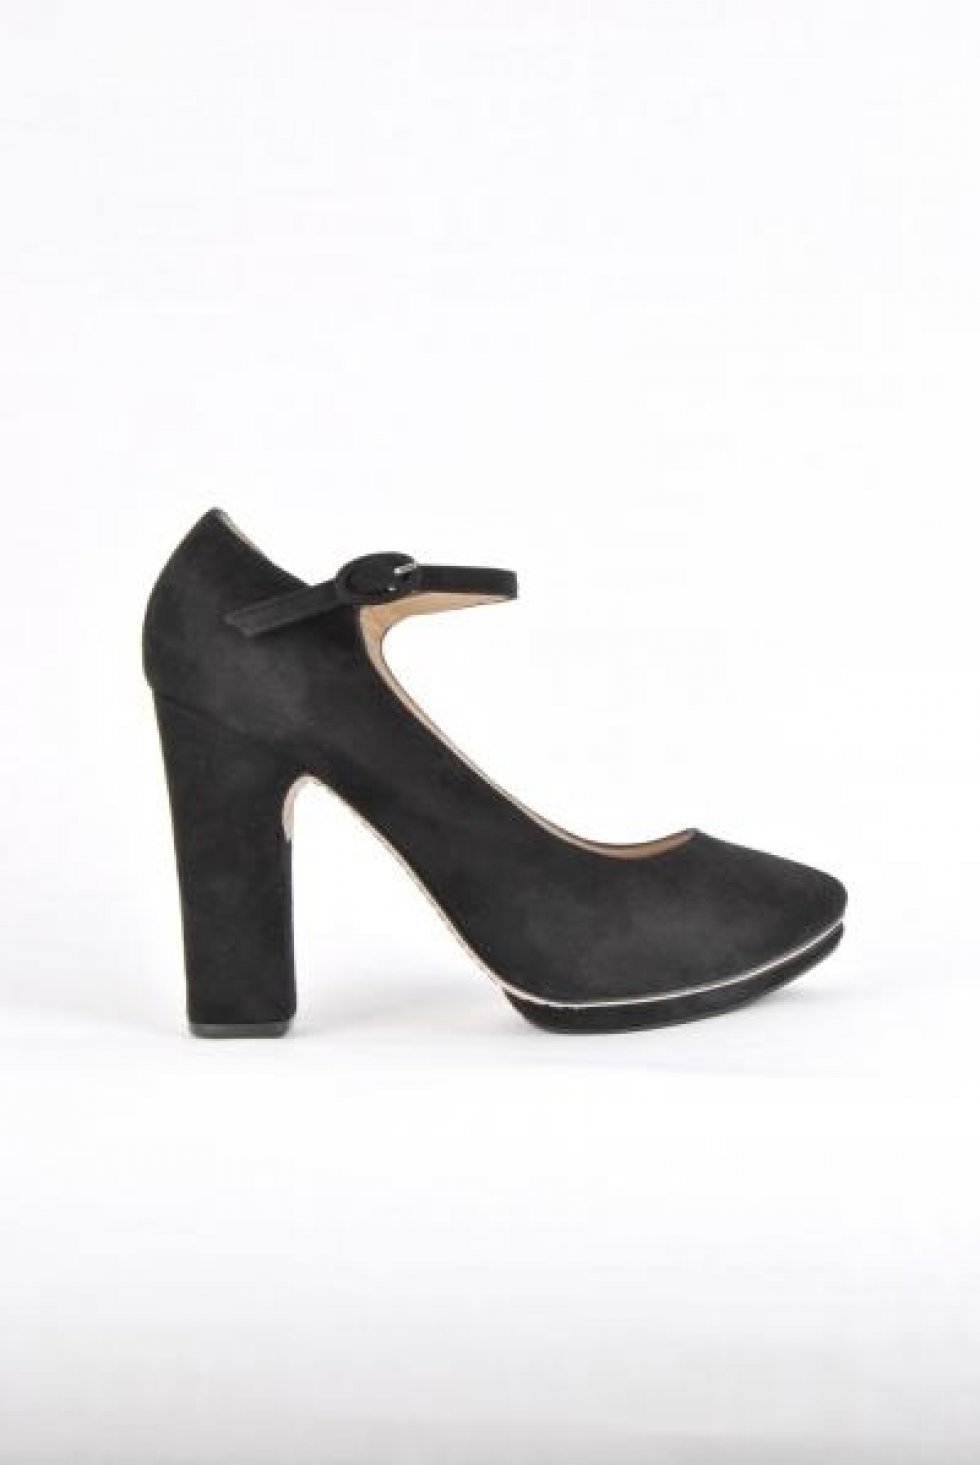 1920'erne inspirerede ruskindssko med chunky hæl fra mærket Repetto - Fundet på: www.dr-adams.dk - Trend 2012: Farverige og skulpturelle sko